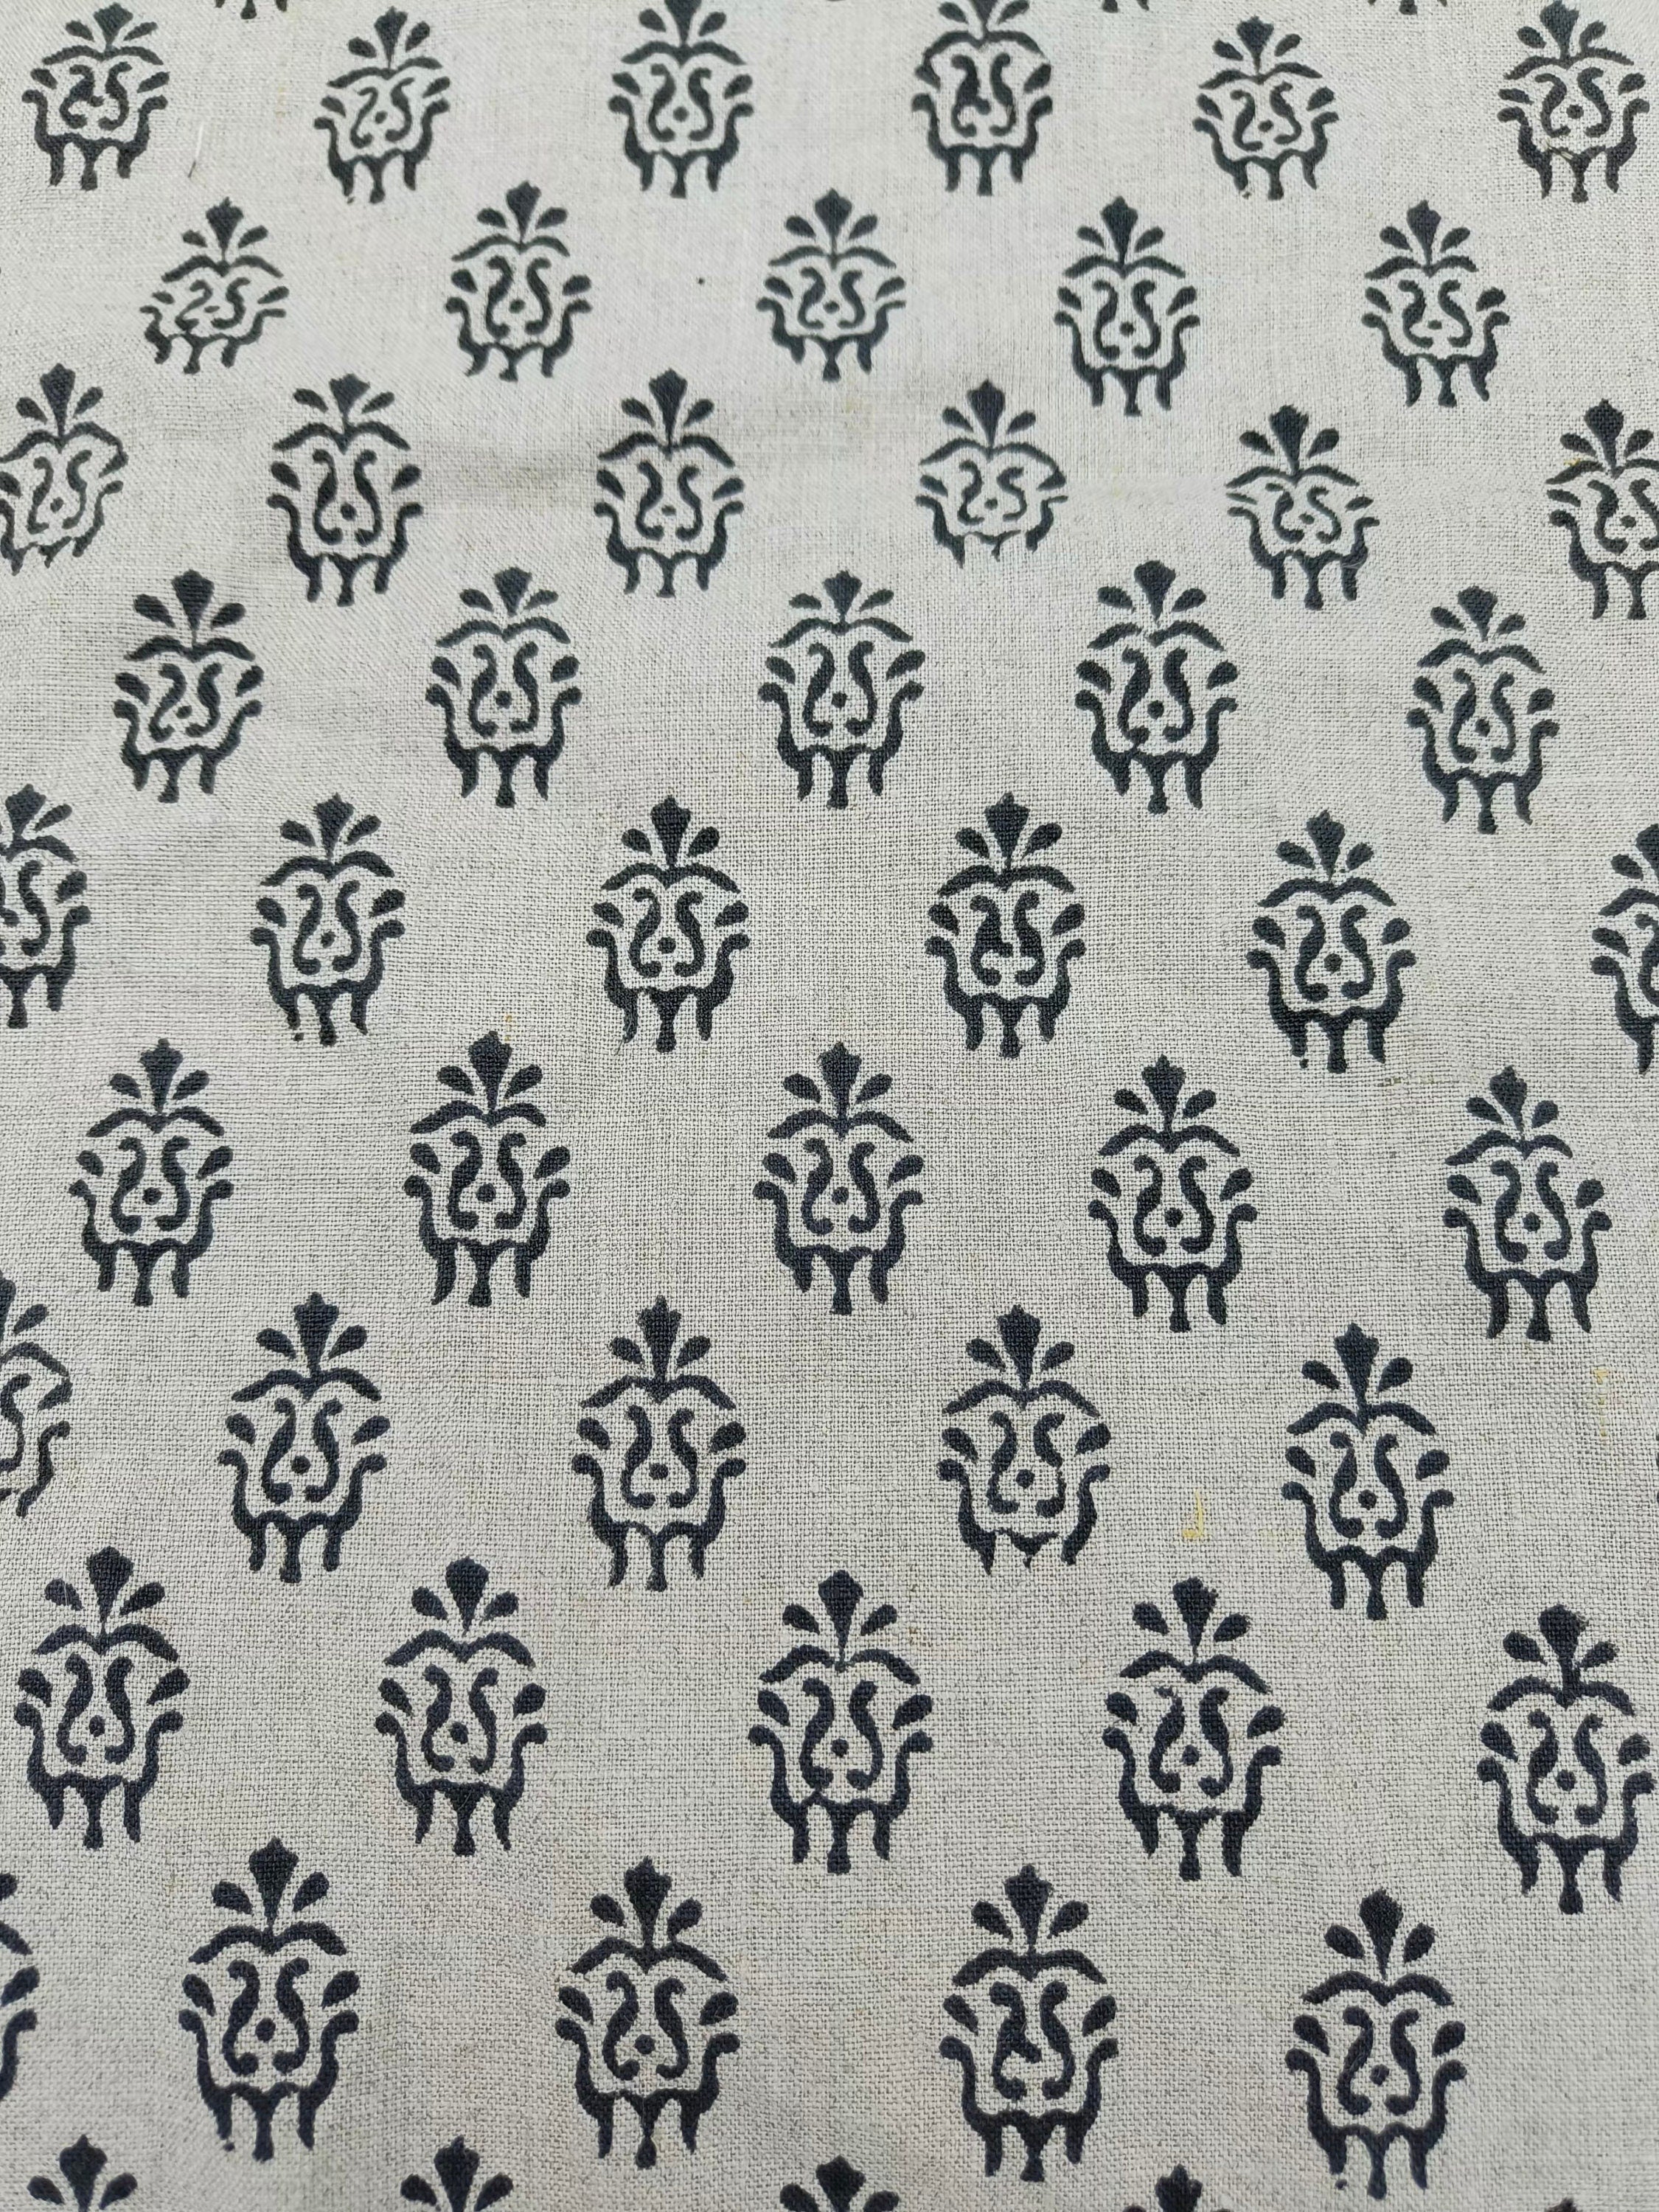 Block Print Pure Linen 58" Wide, luxury fabric Linen, Indian home decor, floral pattern, Organic Linen - Jugnu